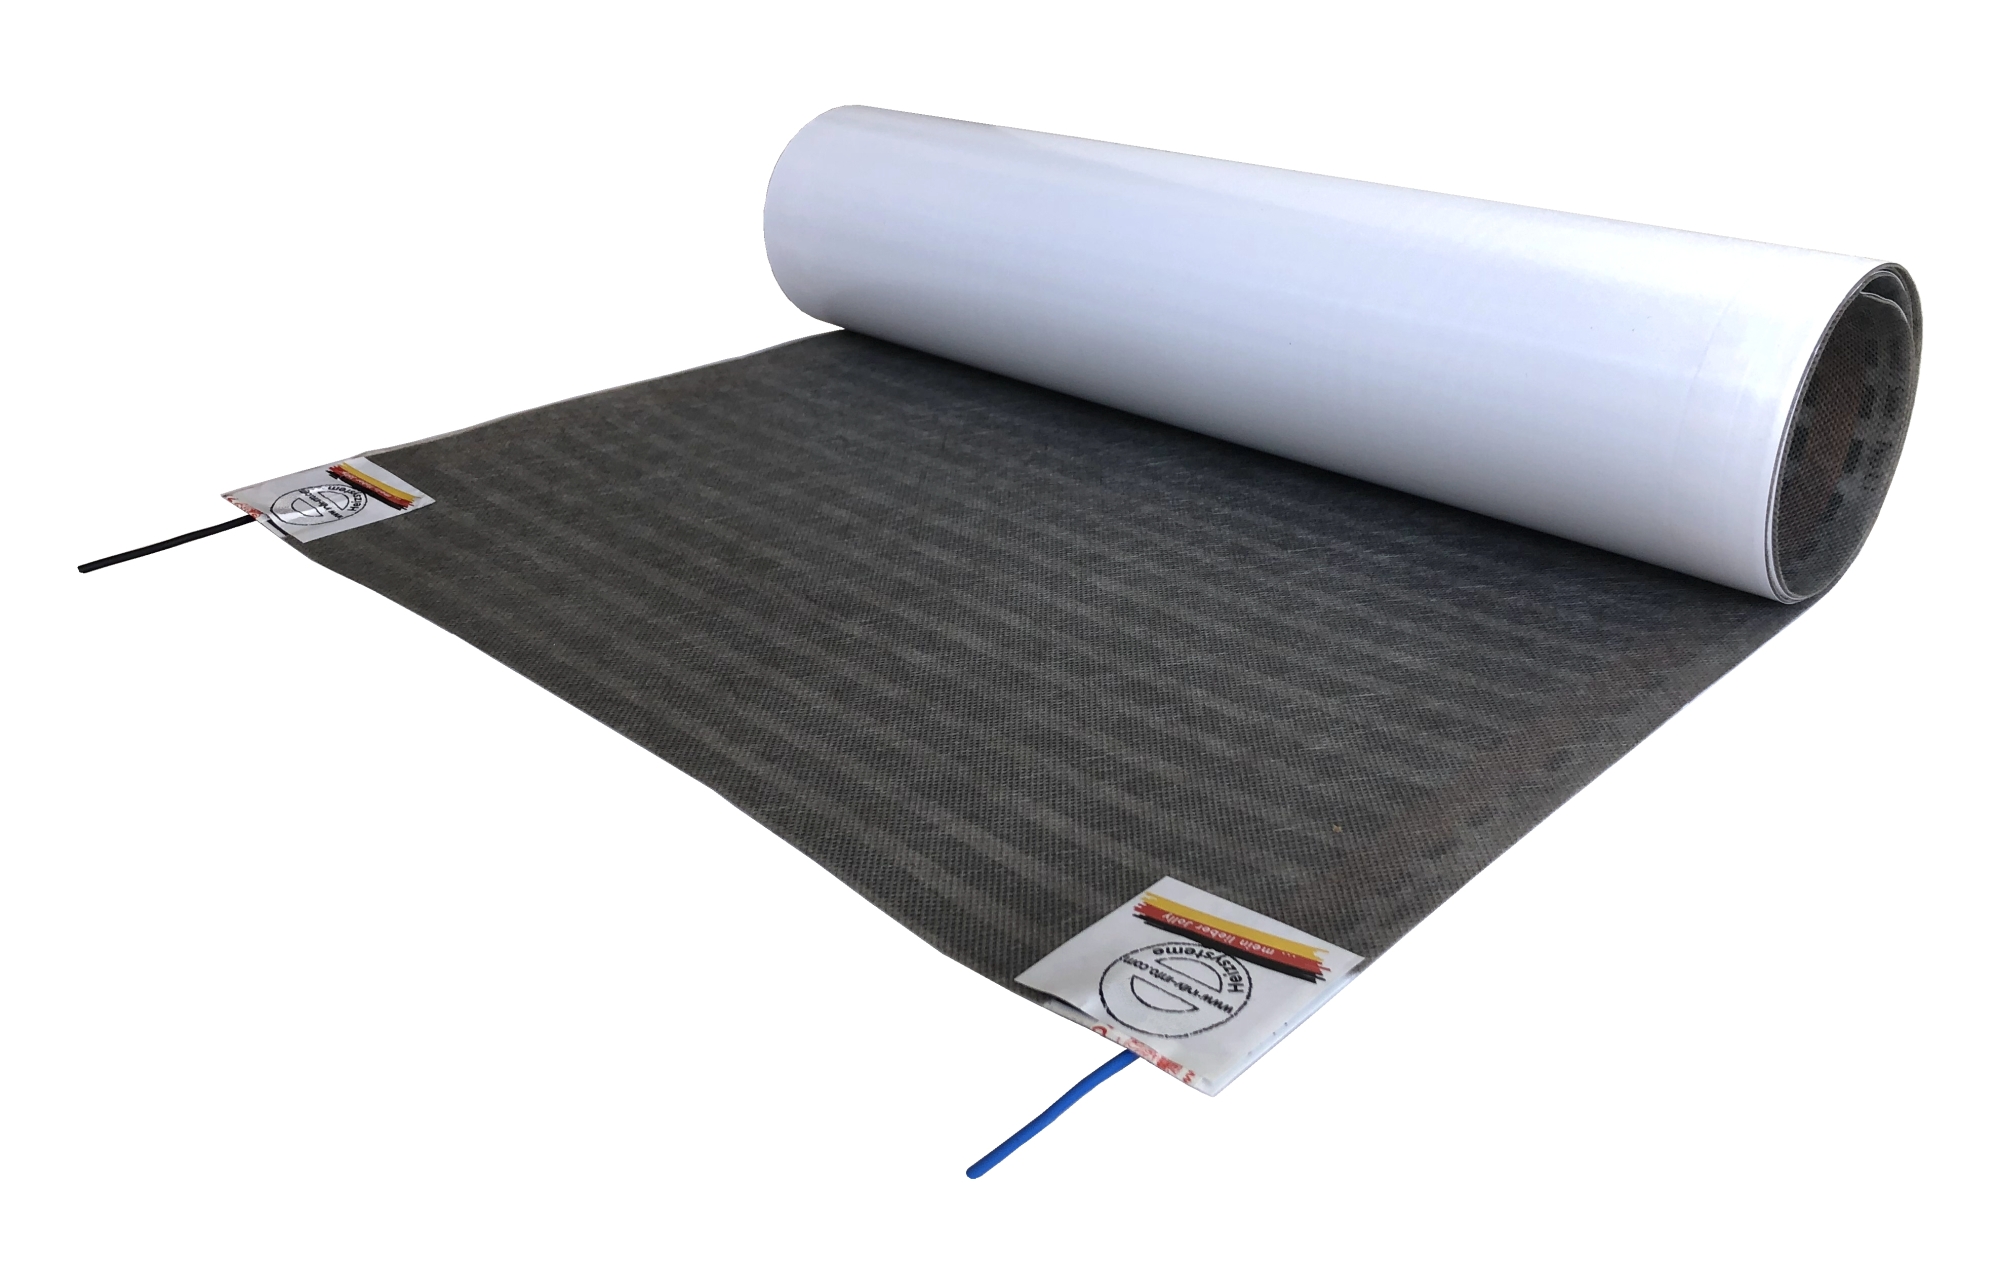 HoWaTech Lux Elektrische Fußbodenheizung | Folienheizung für Parkett Laminat Venyl